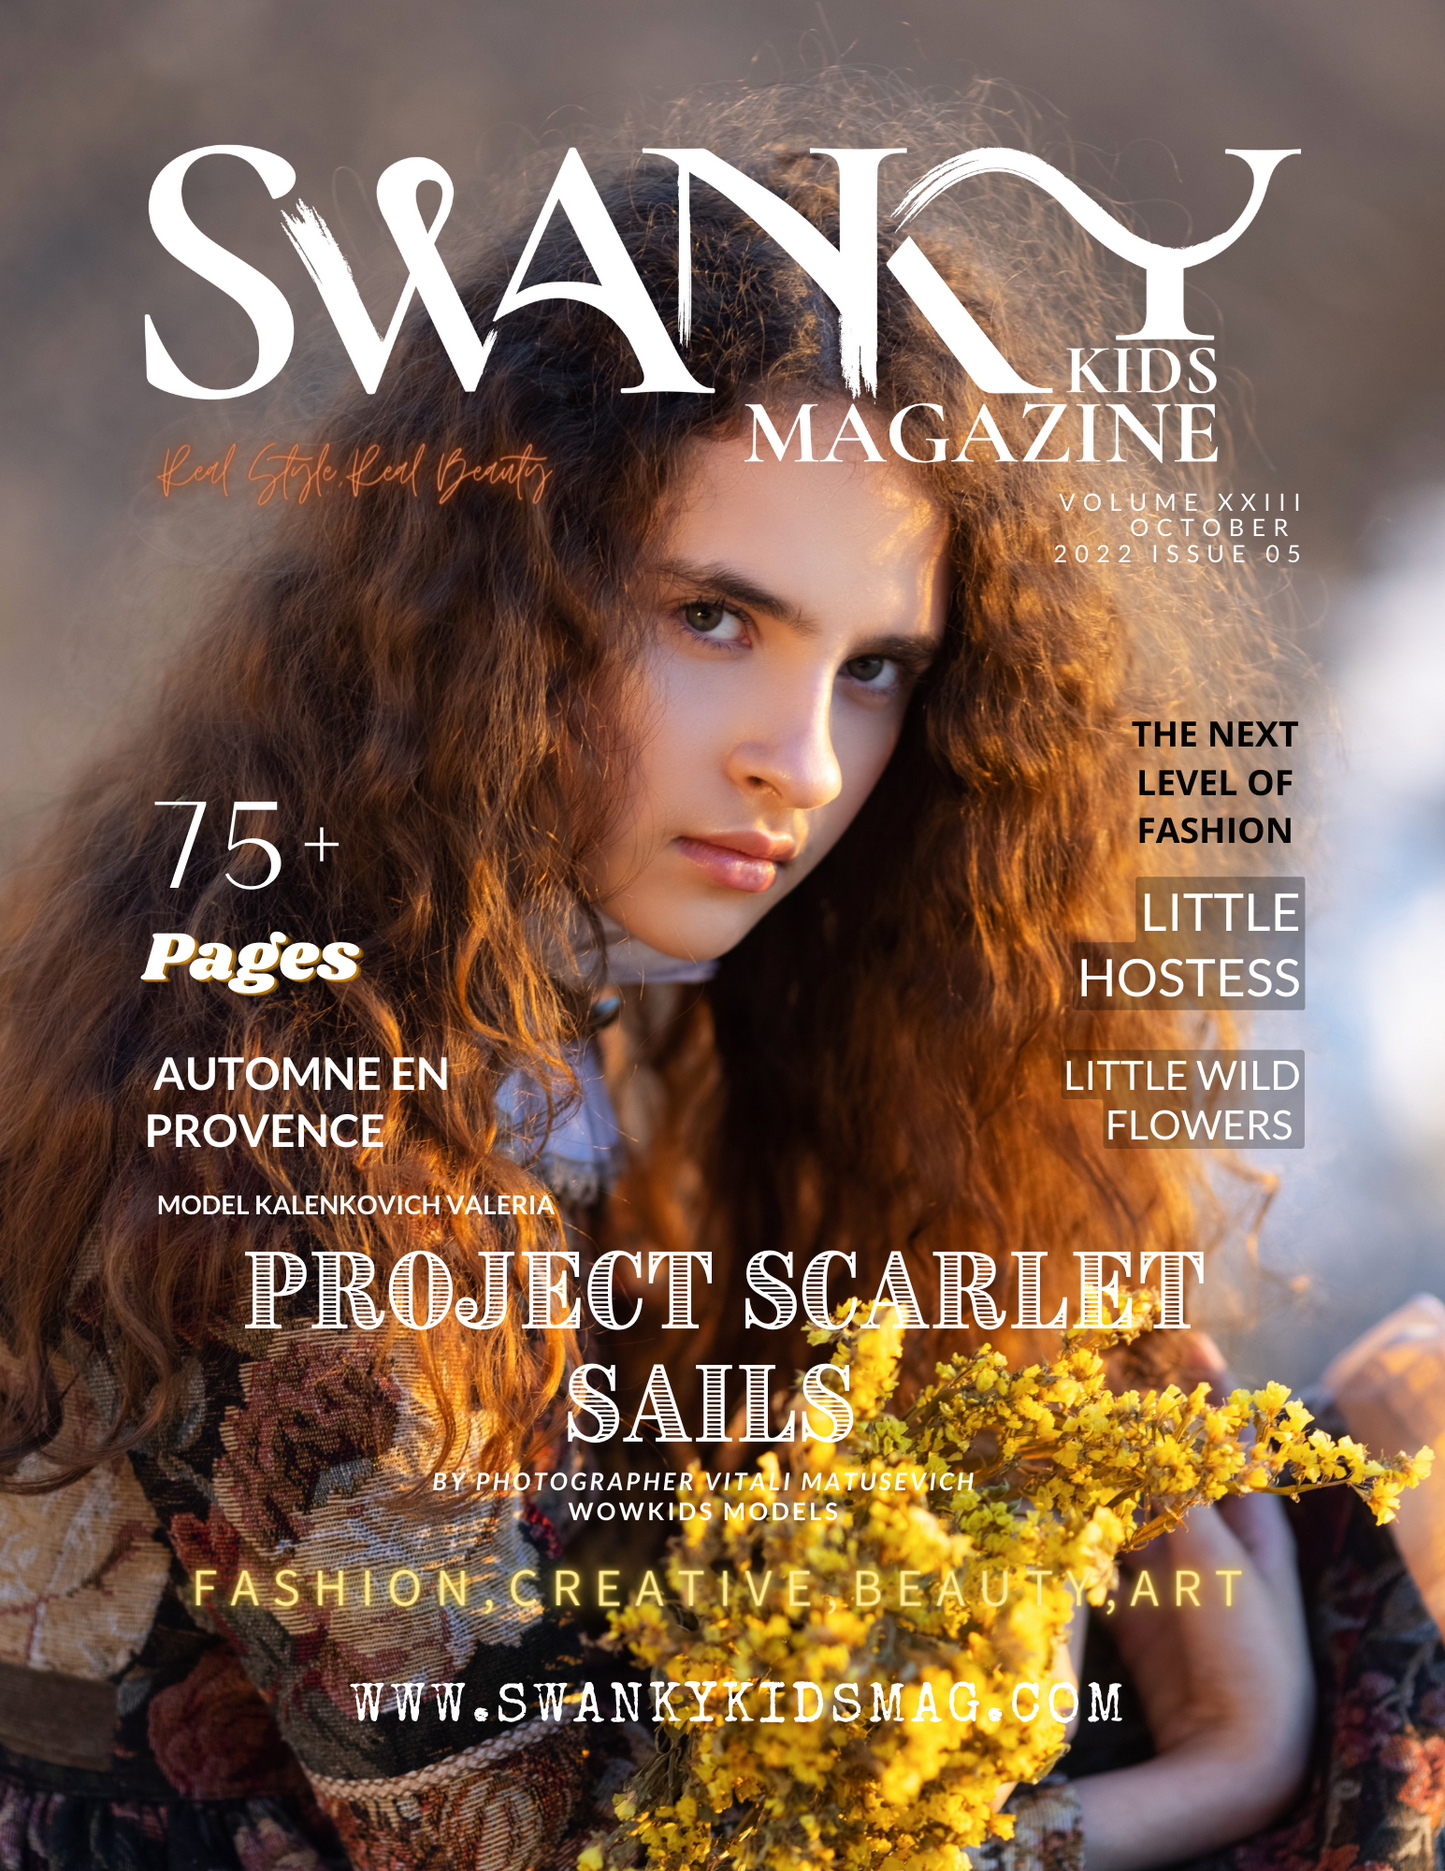 Swanky Kids Magazine October 2022 VOL XXIII Issue 05